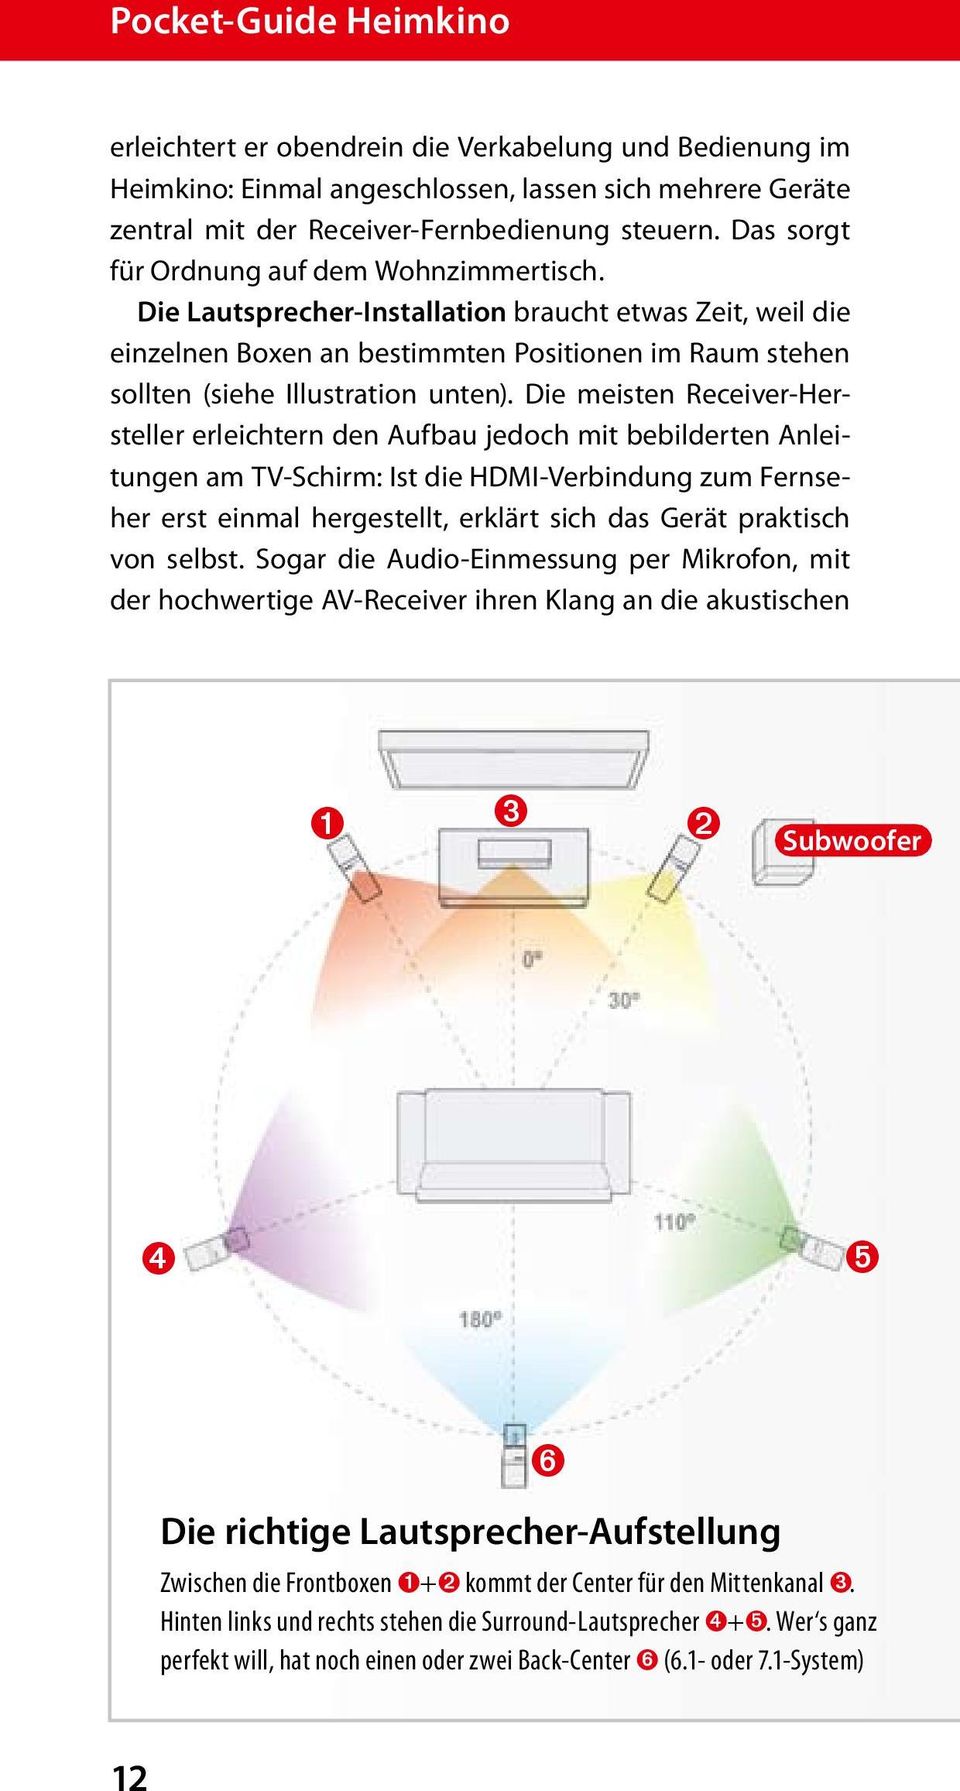 Die meisten Receiver-Hersteller erleichtern den Aufbau jedoch mit bebilderten Anleitungen am TV-Schirm: Ist die HDMI-Verbindung zum Fernseher erst einmal hergestellt, erklärt sich das Gerät praktisch